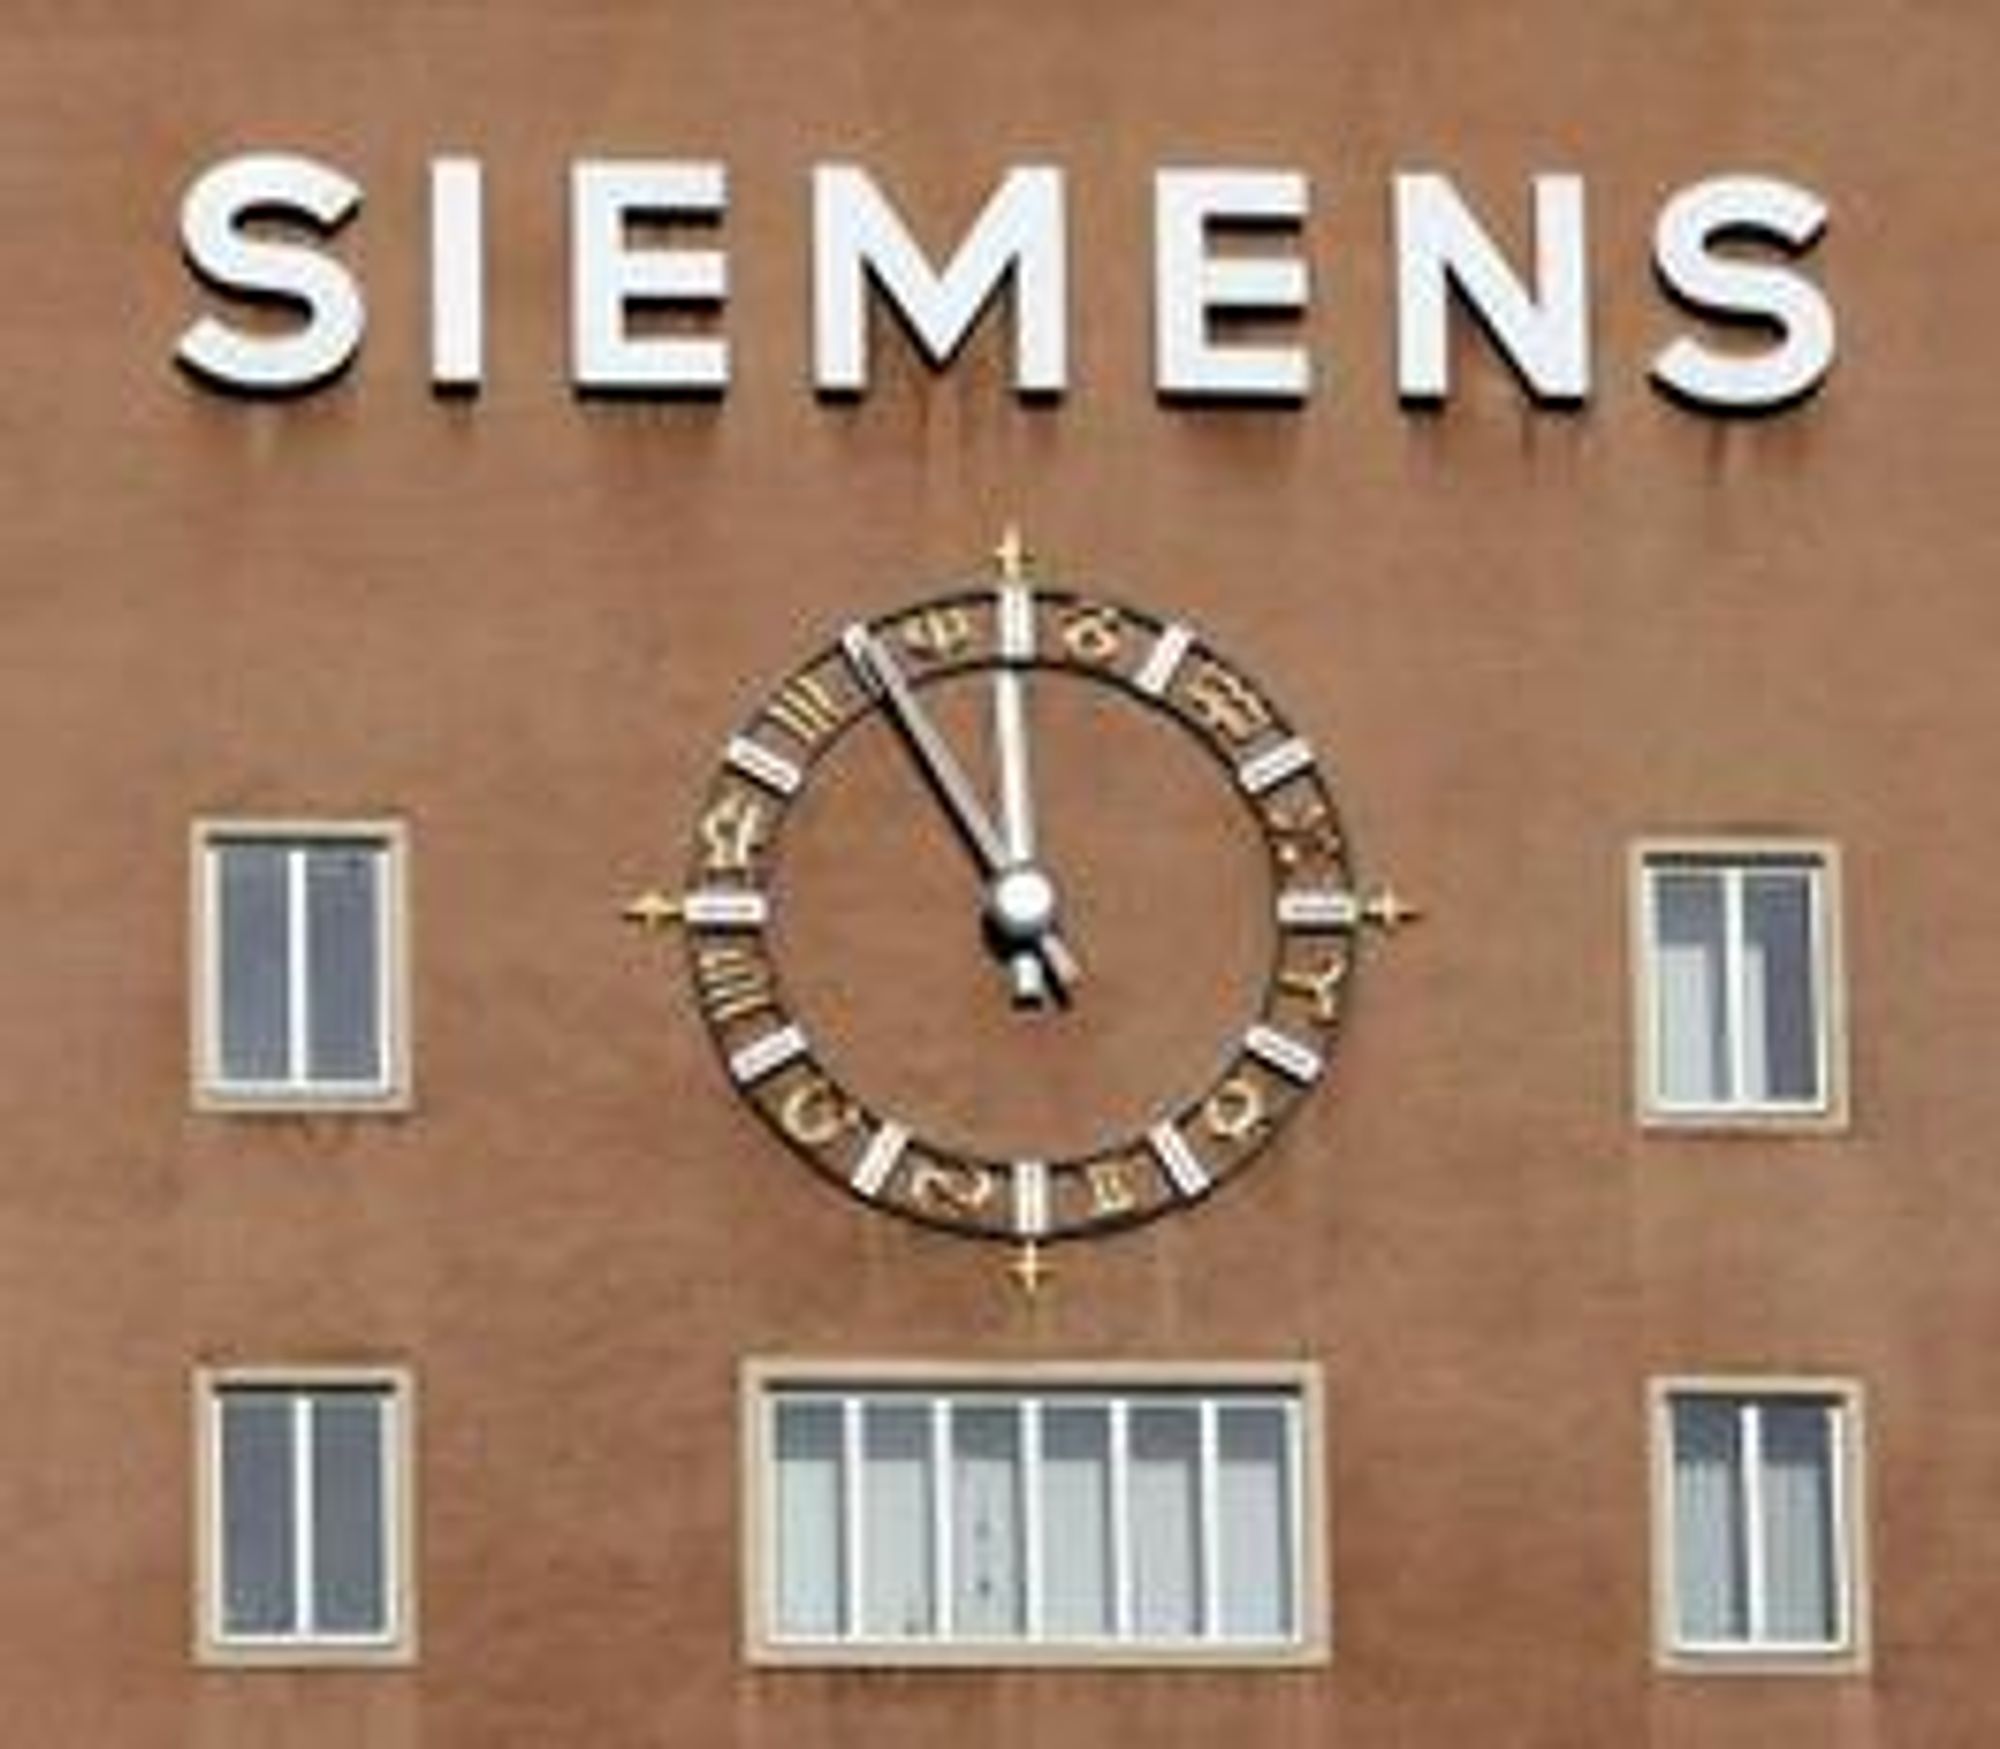 Siemens-topp fengslet